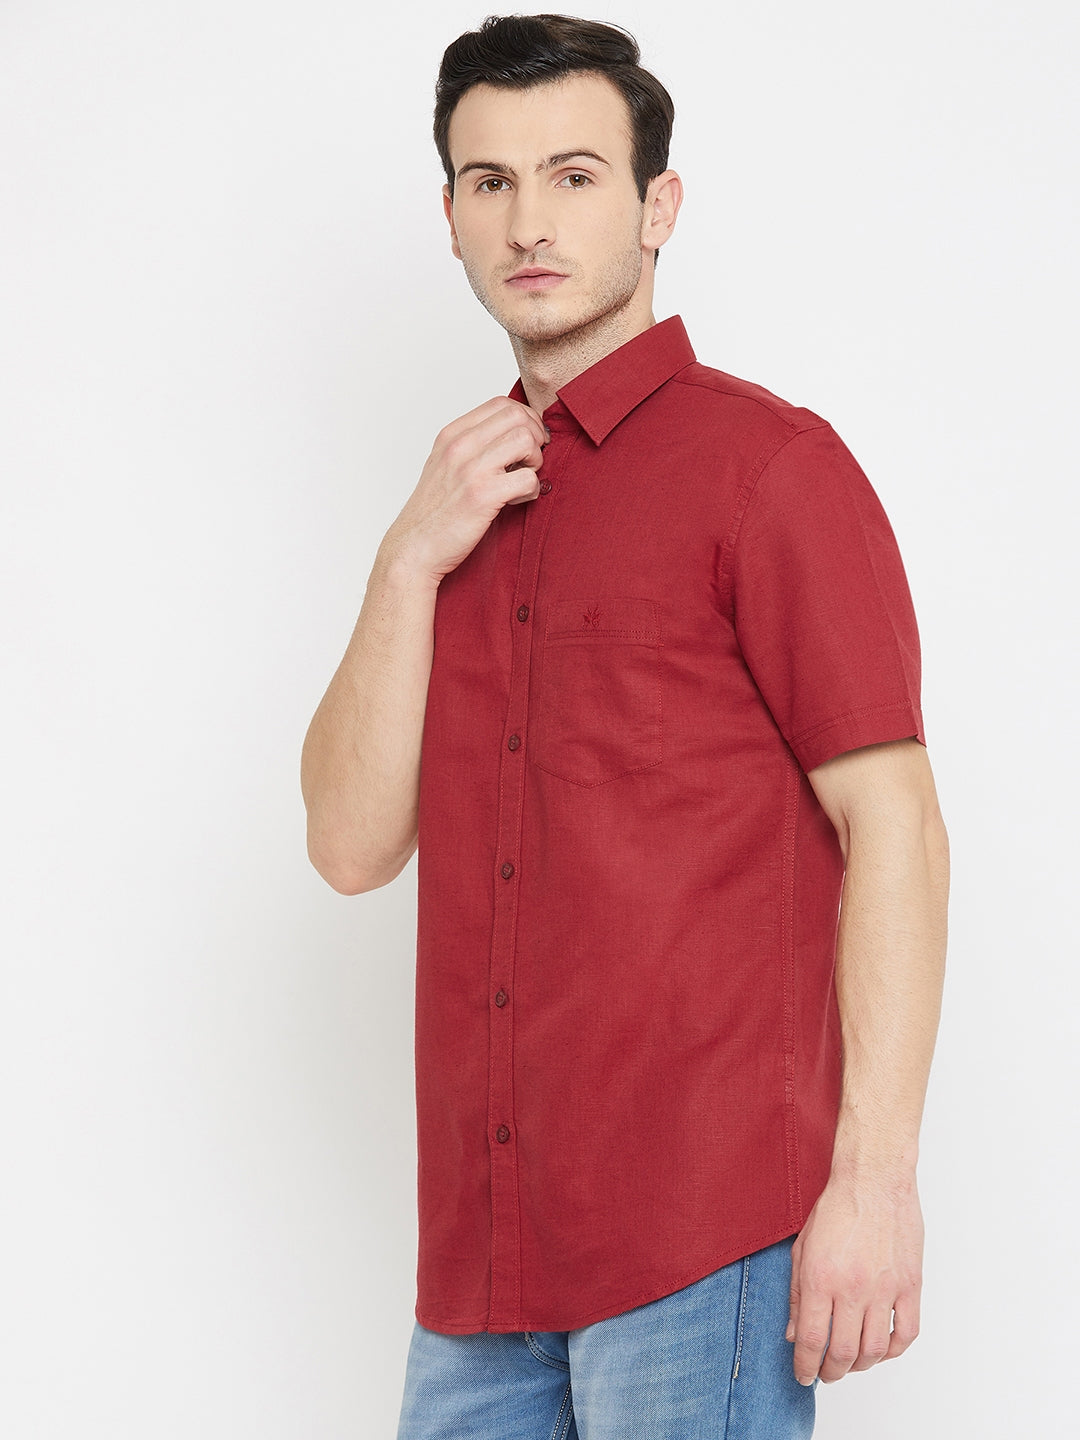 Red 100% Linen shirt - Men Shirts